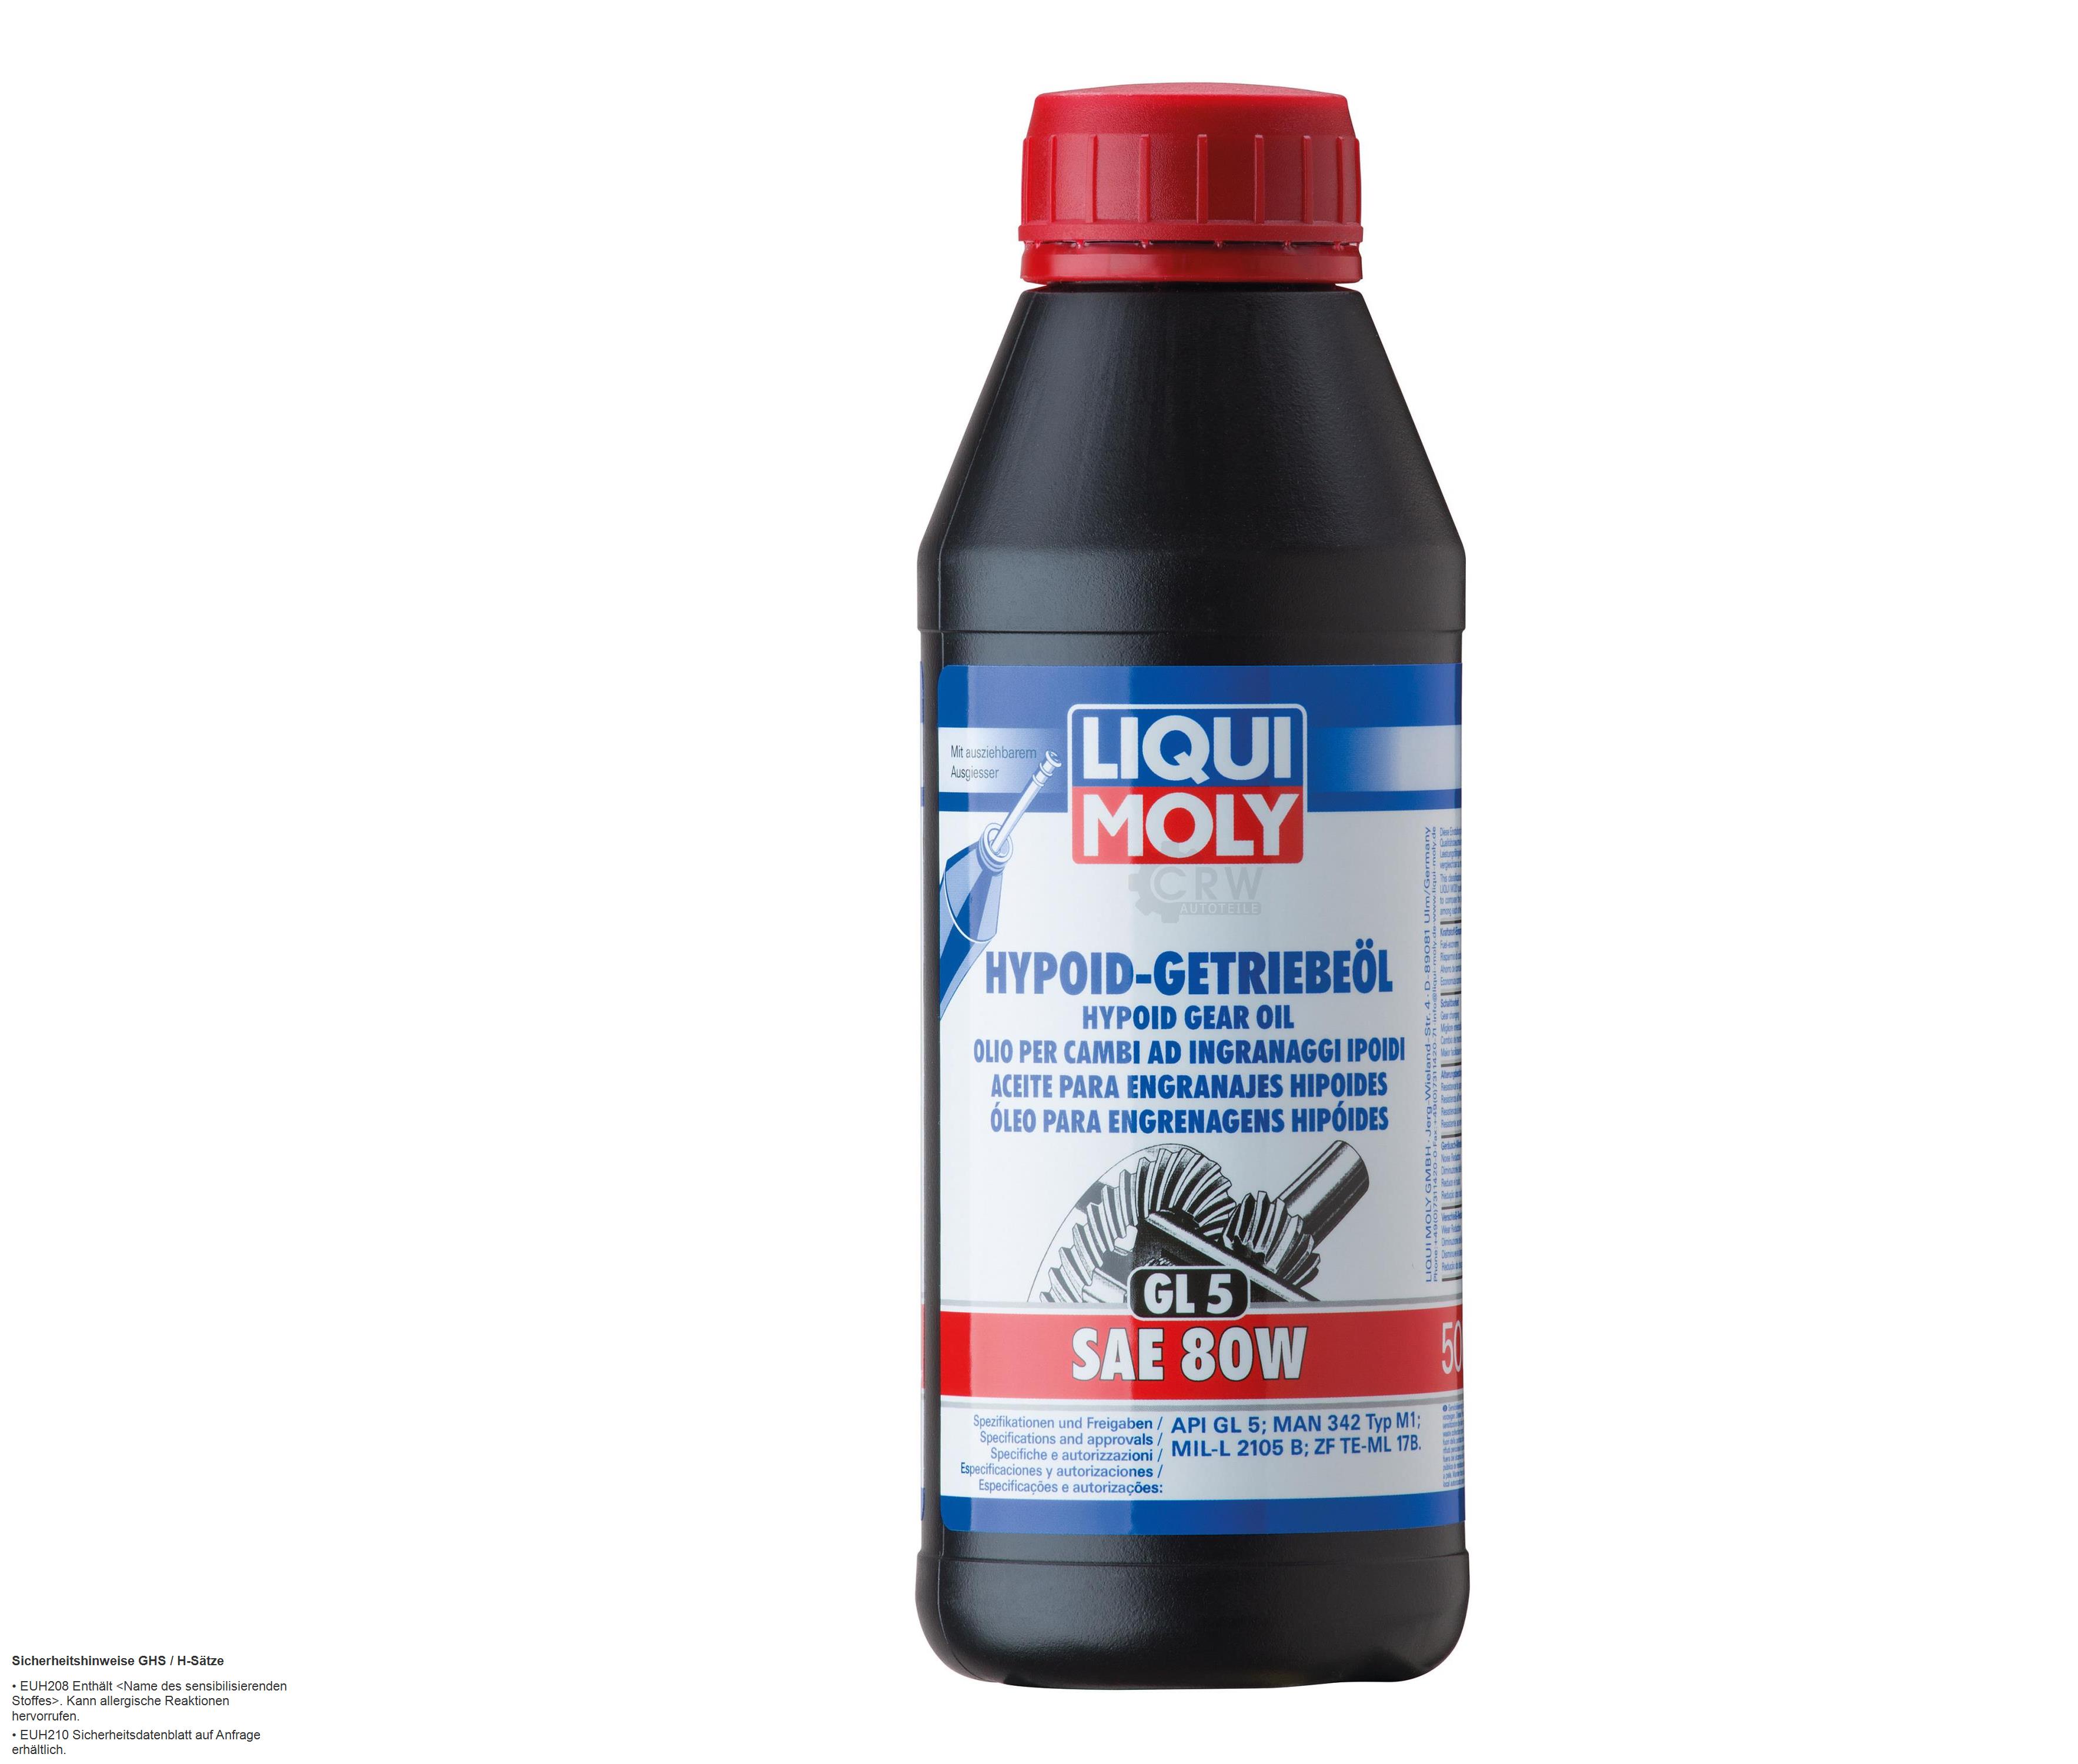 Liqui Moly Hypoid-Getriebeöl (GL5) SAE 80W Gear Oil 500 ml